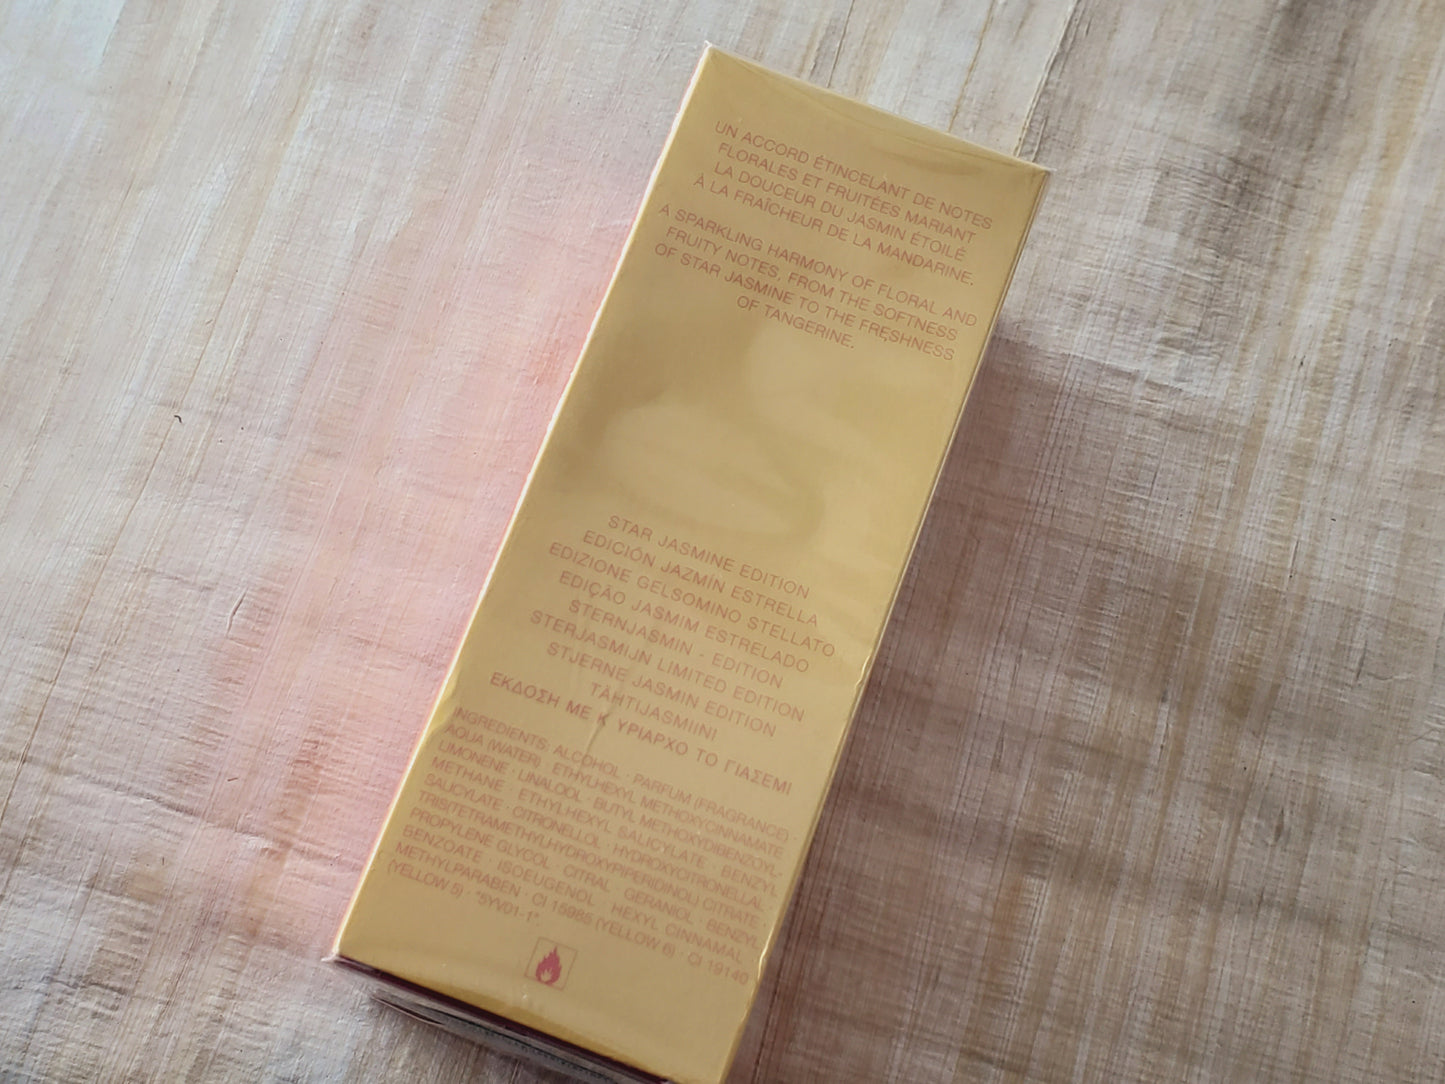 In Love Again Jasmin Etoile Yves Saint Laurent for women EDT Spray 100 ml 3.4 oz, Vintage, Rare